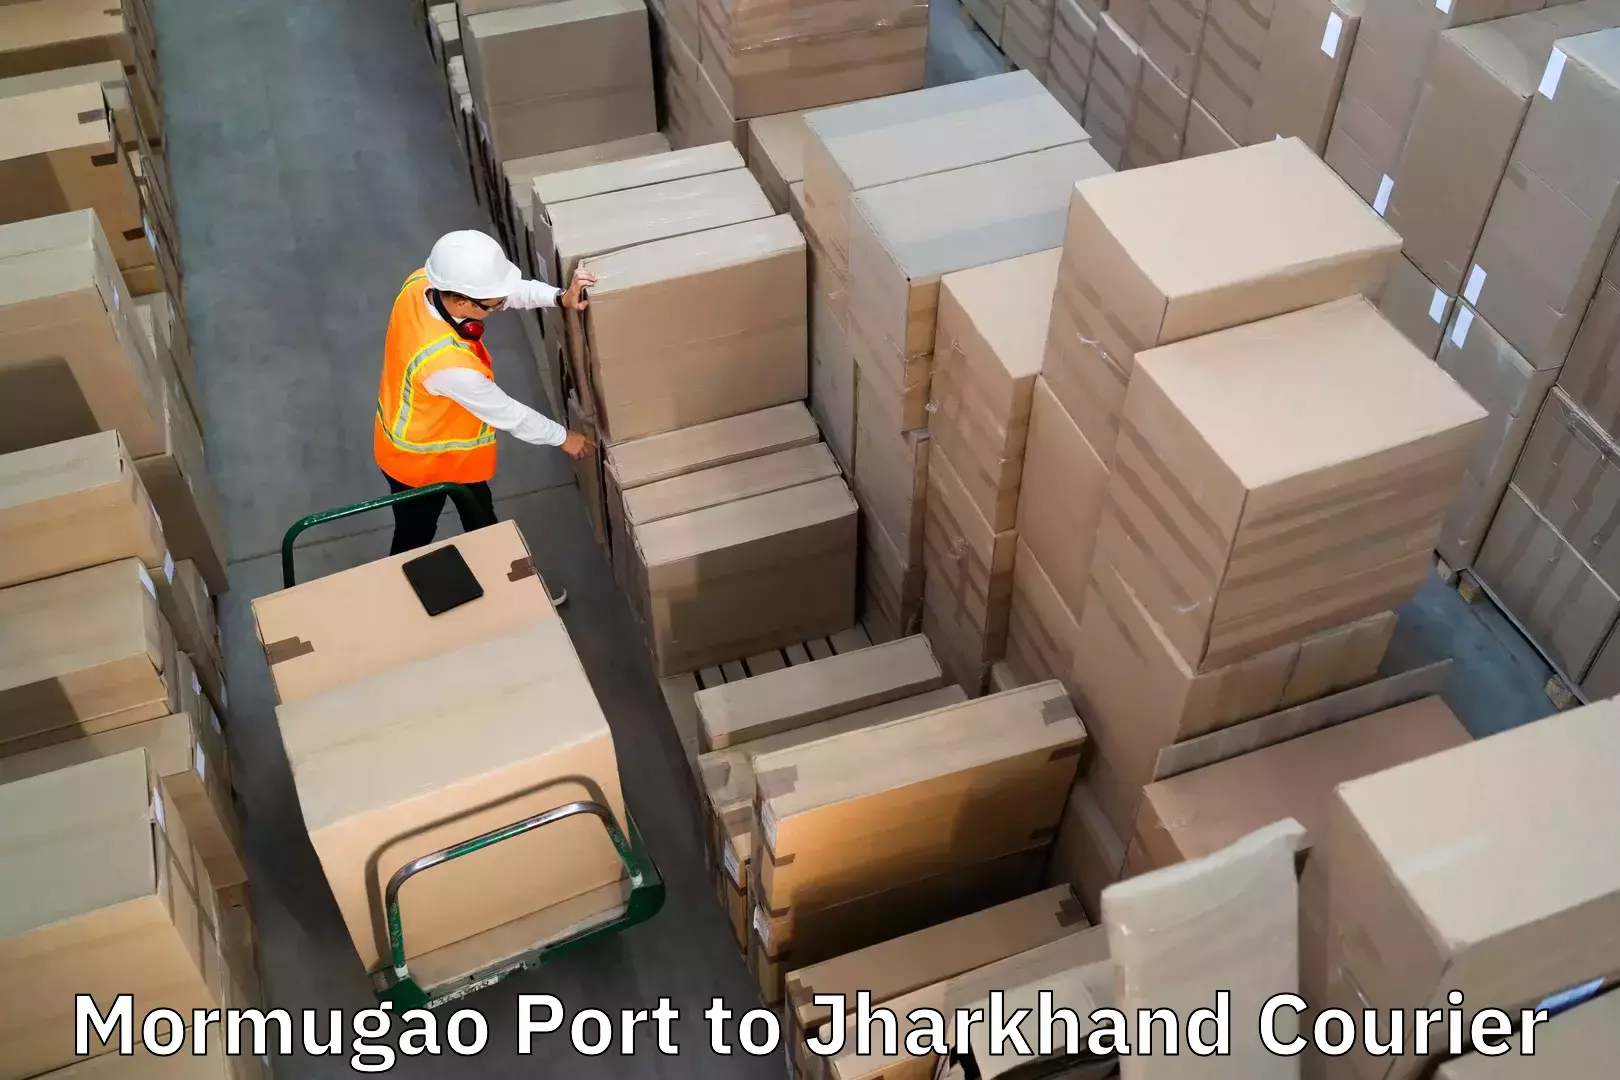 Luggage shipment tracking in Mormugao Port to Satbarwa